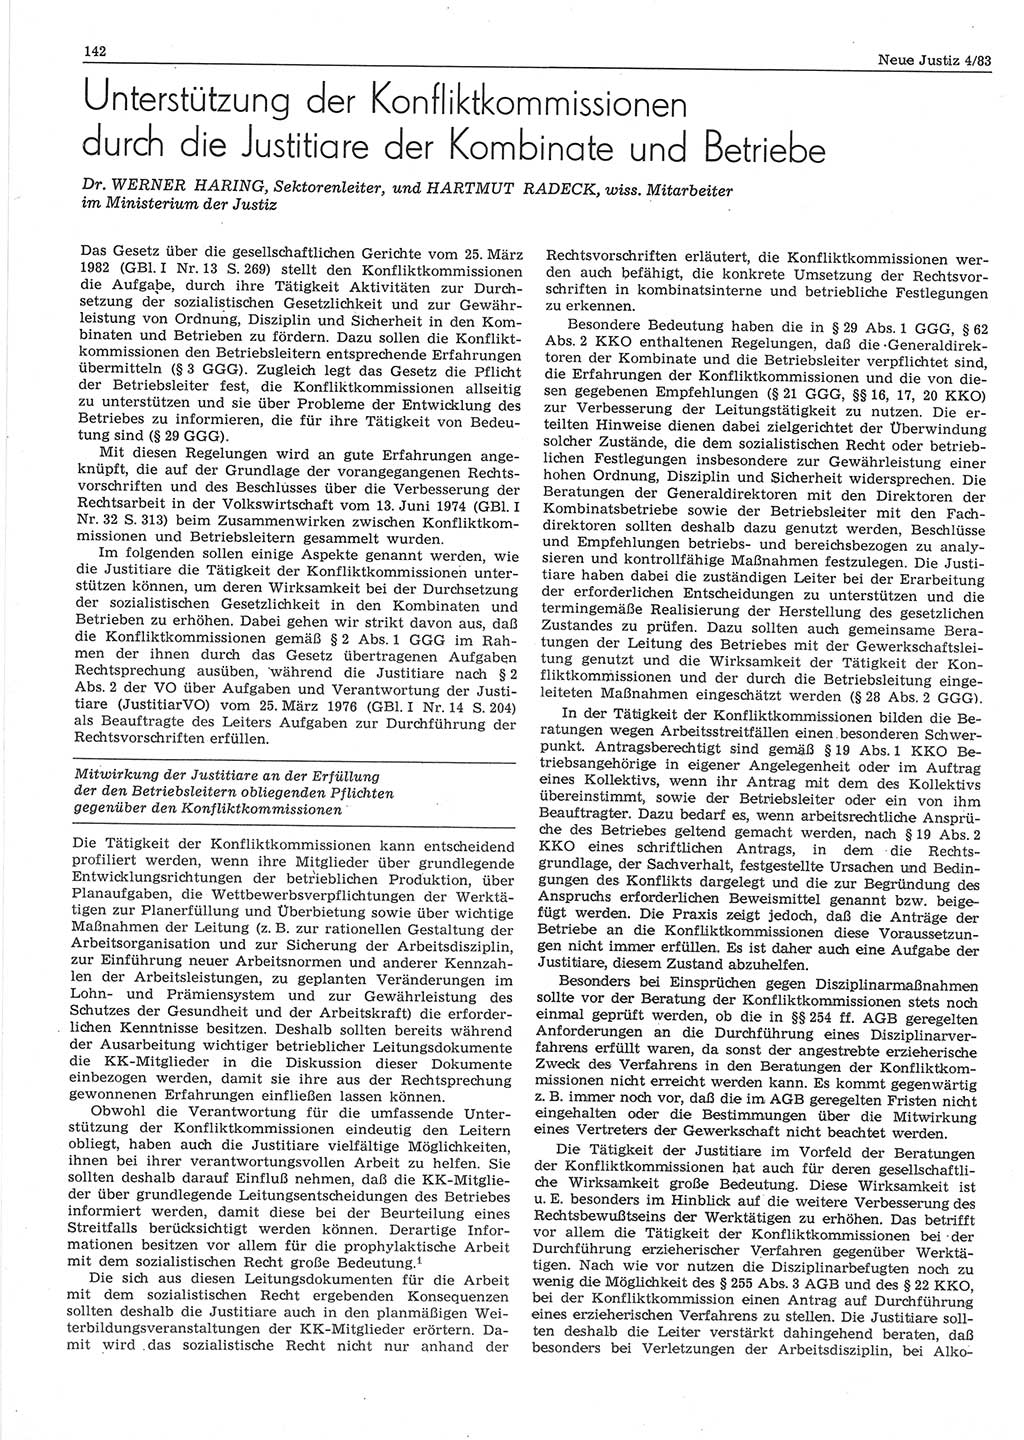 Neue Justiz (NJ), Zeitschrift für sozialistisches Recht und Gesetzlichkeit [Deutsche Demokratische Republik (DDR)], 37. Jahrgang 1983, Seite 142 (NJ DDR 1983, S. 142)